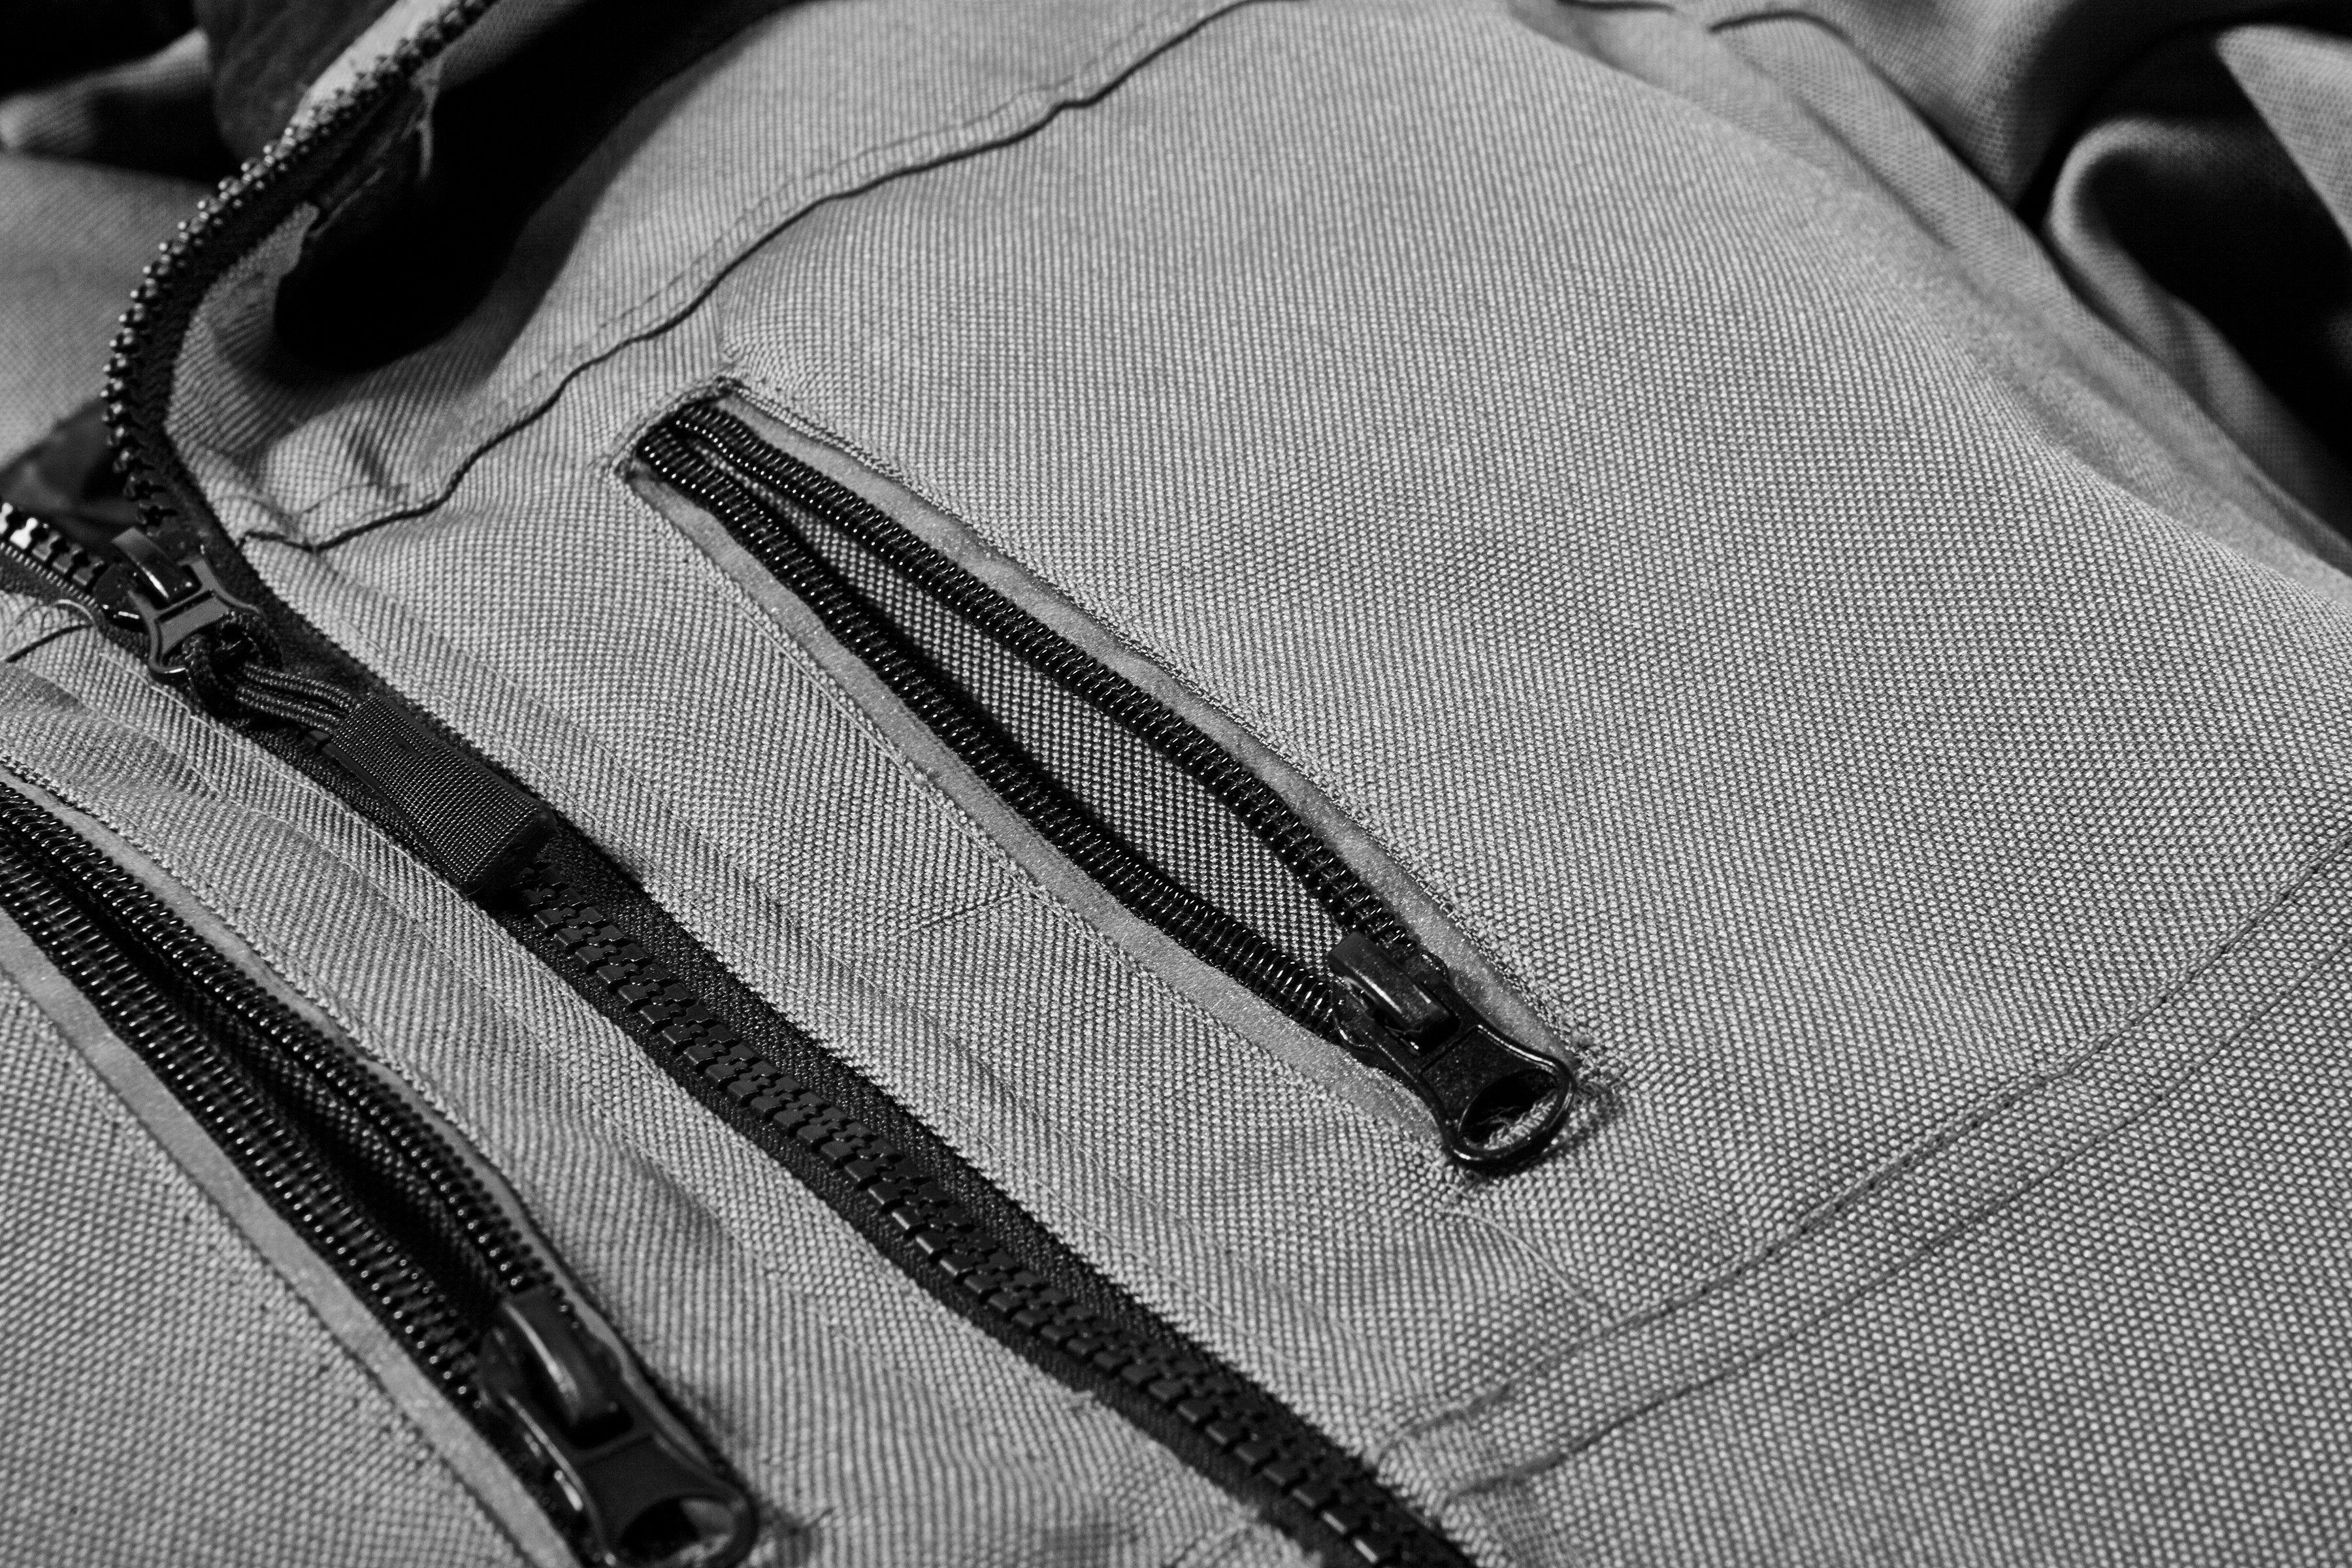 safety& more grau-schwarz Extreme Reflexelemente Arbeitsjacke